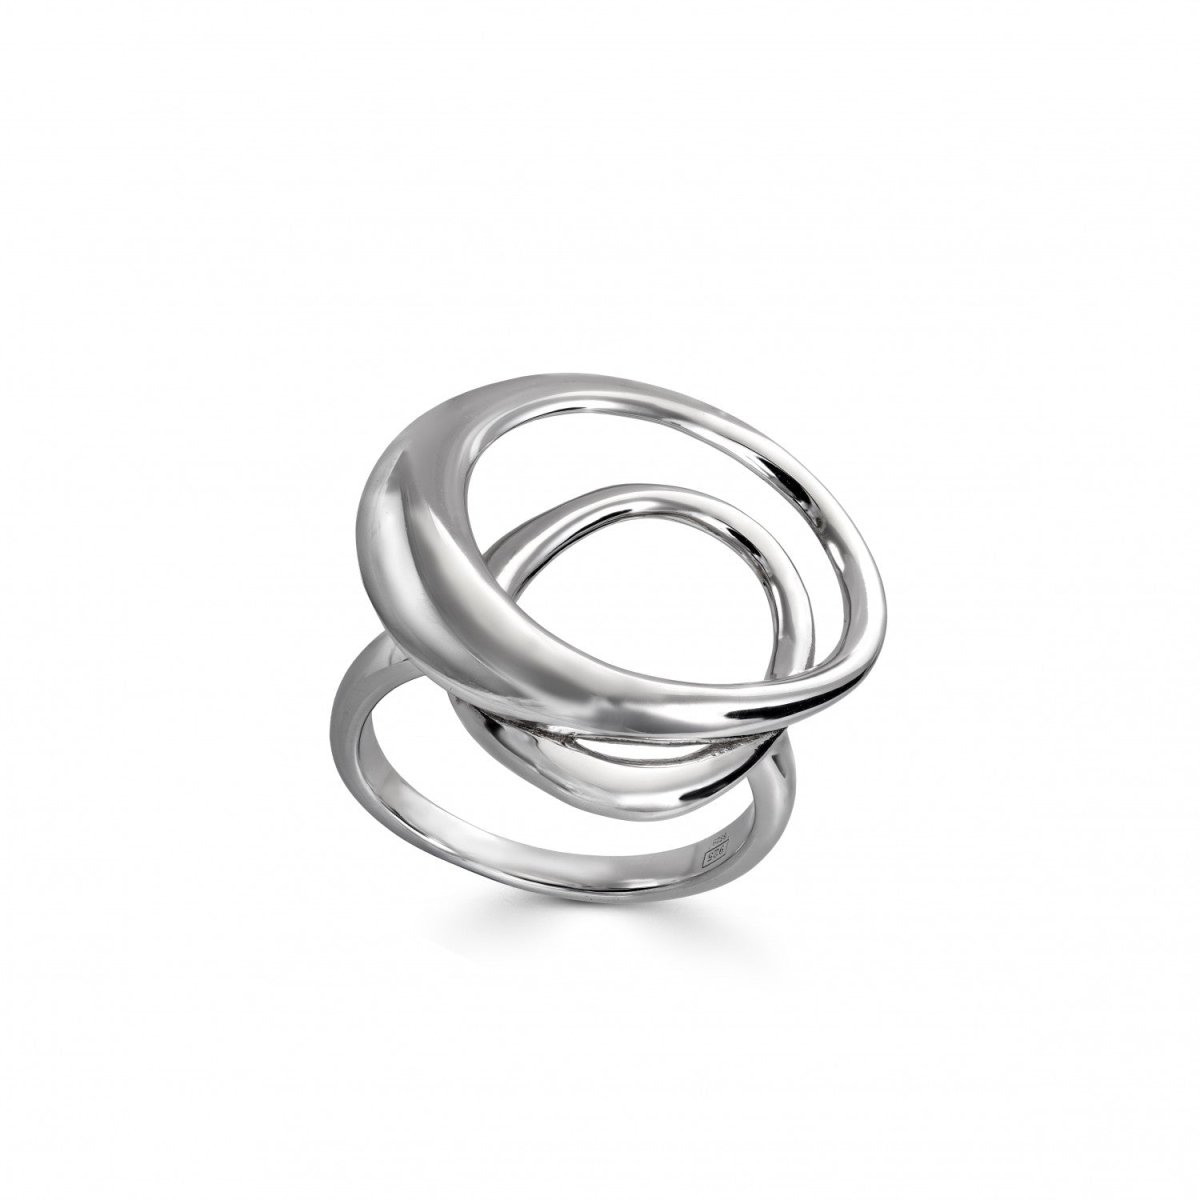 Anillo · Anillos grandes diseño espiral en plata lisa